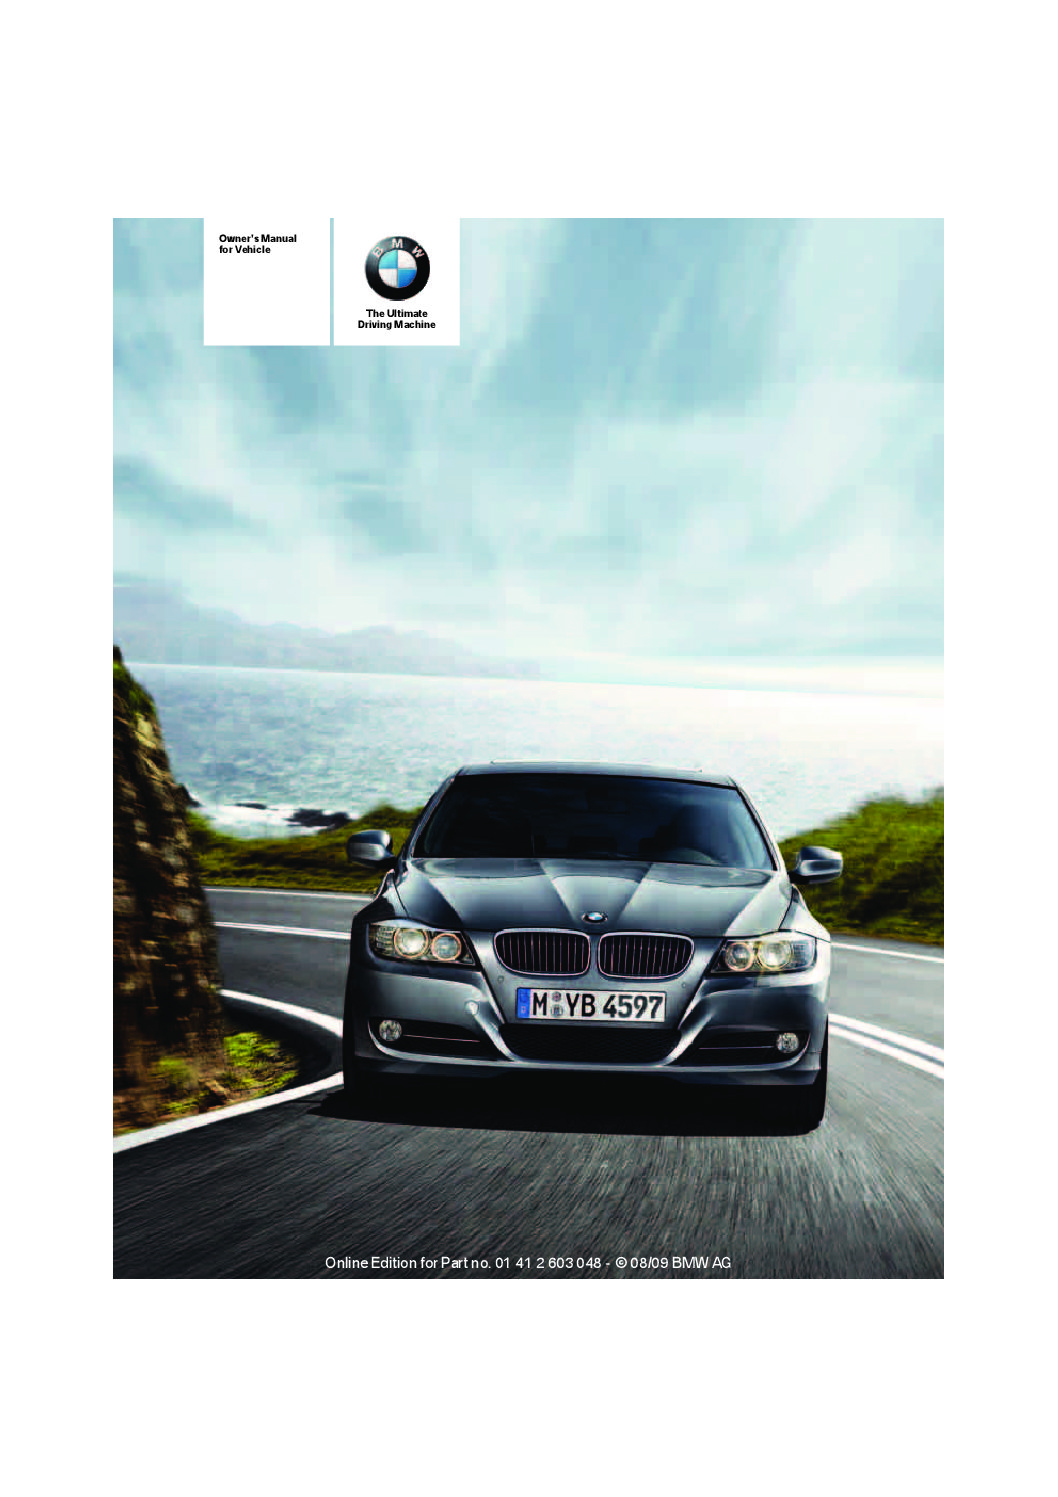 2010 BMW 3 Sedan Owner’s Manual Image